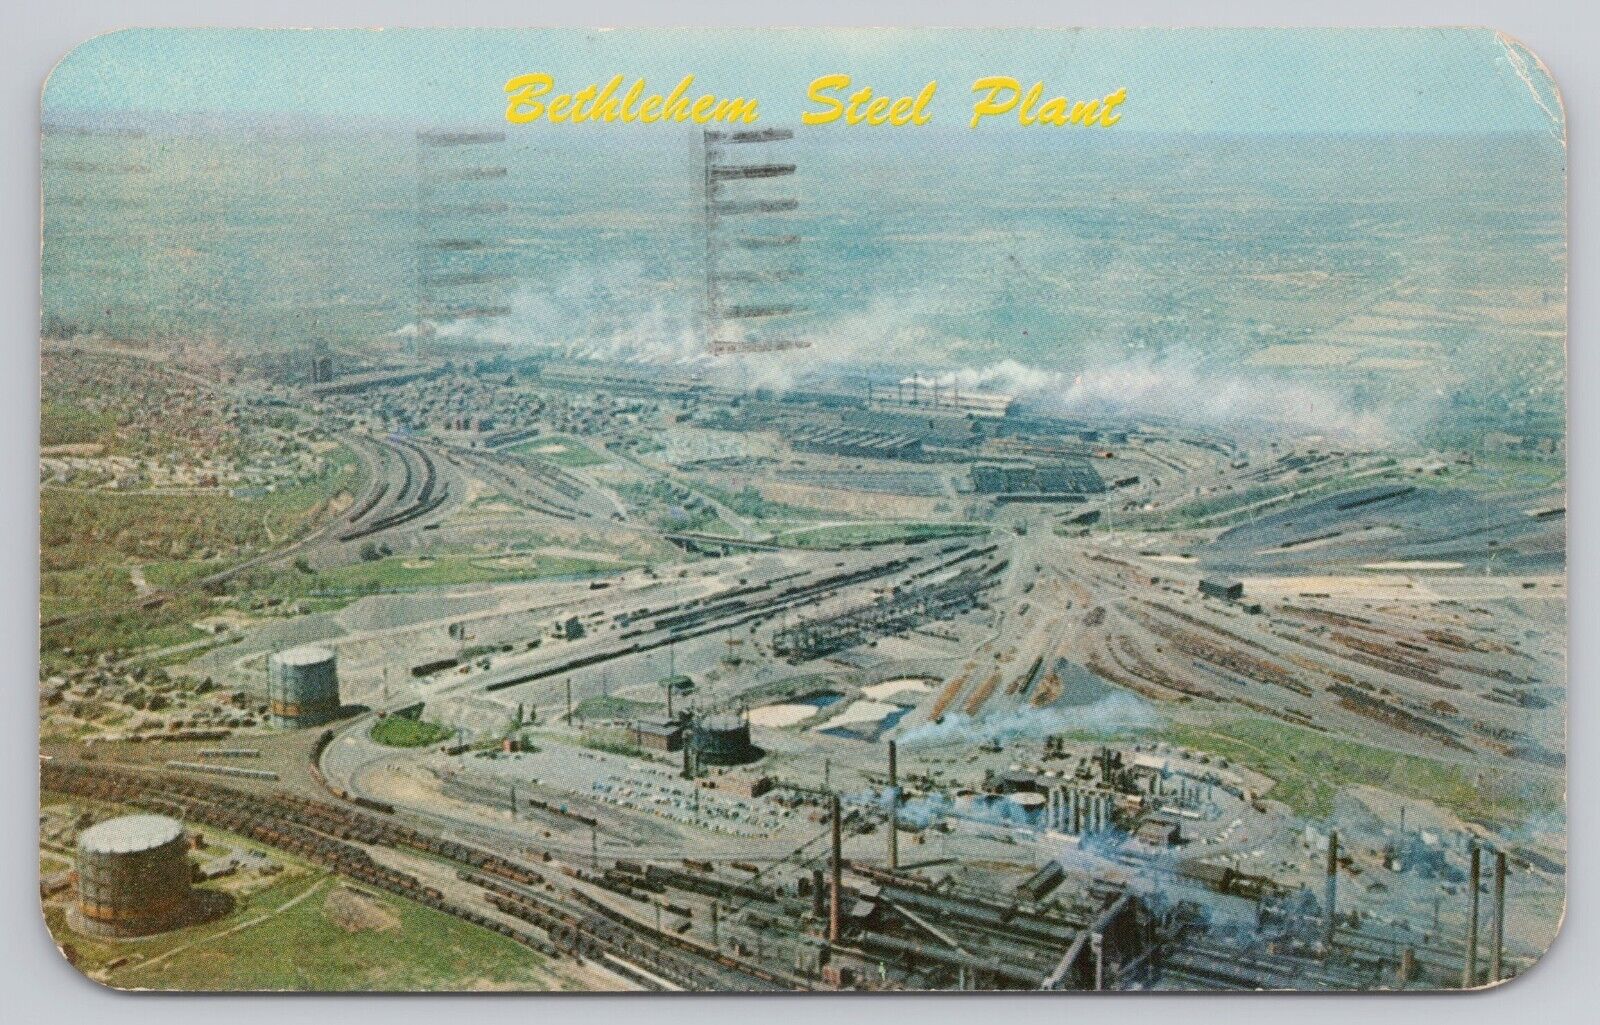 Bethlehem Pennsylvania, Bethlehem Steel Plant Aerial View, Vintage Postcard